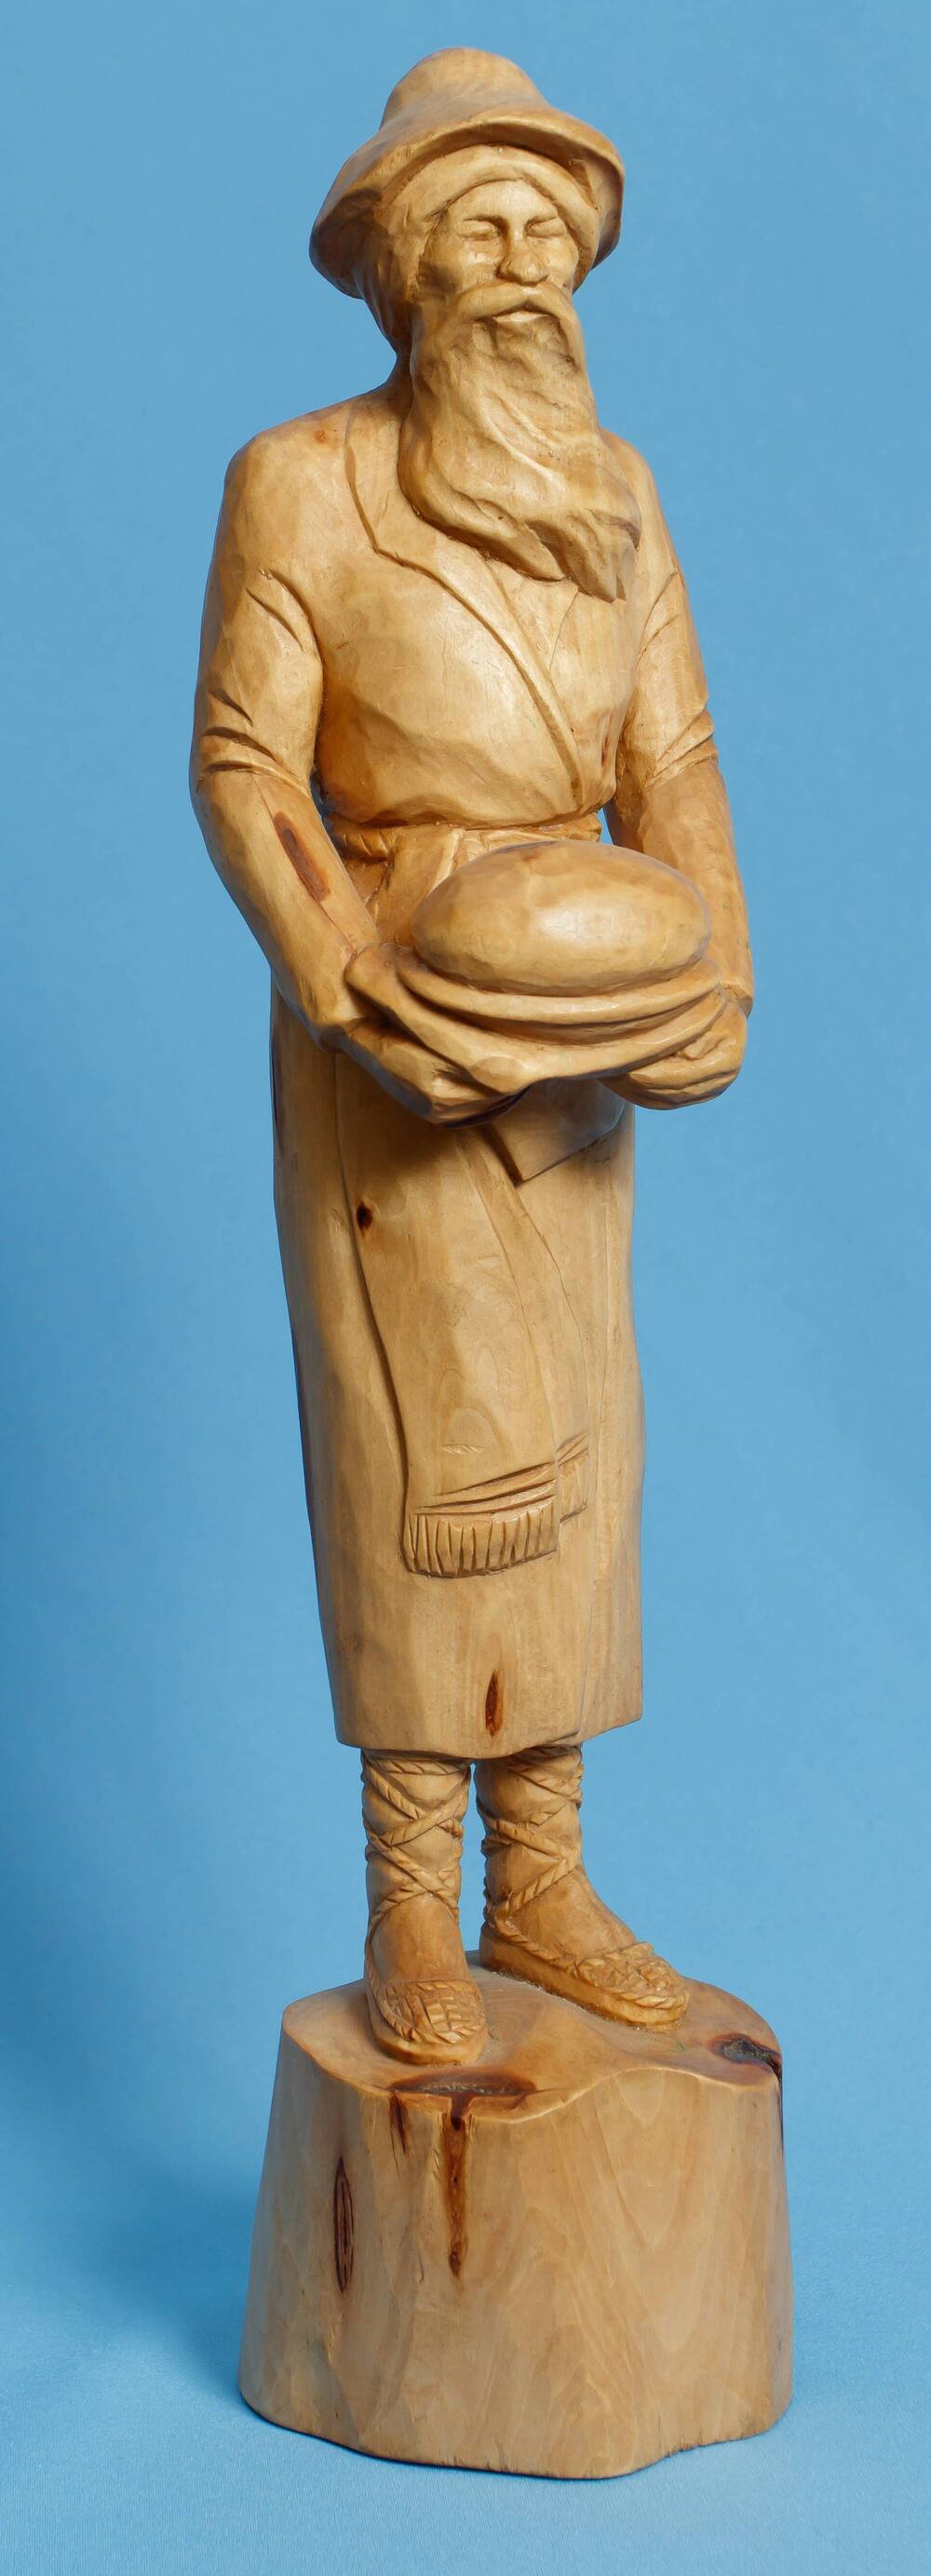 Макет деревянной парковой скульптуры Жрец Торо. Автор: В.А. Вострецов.